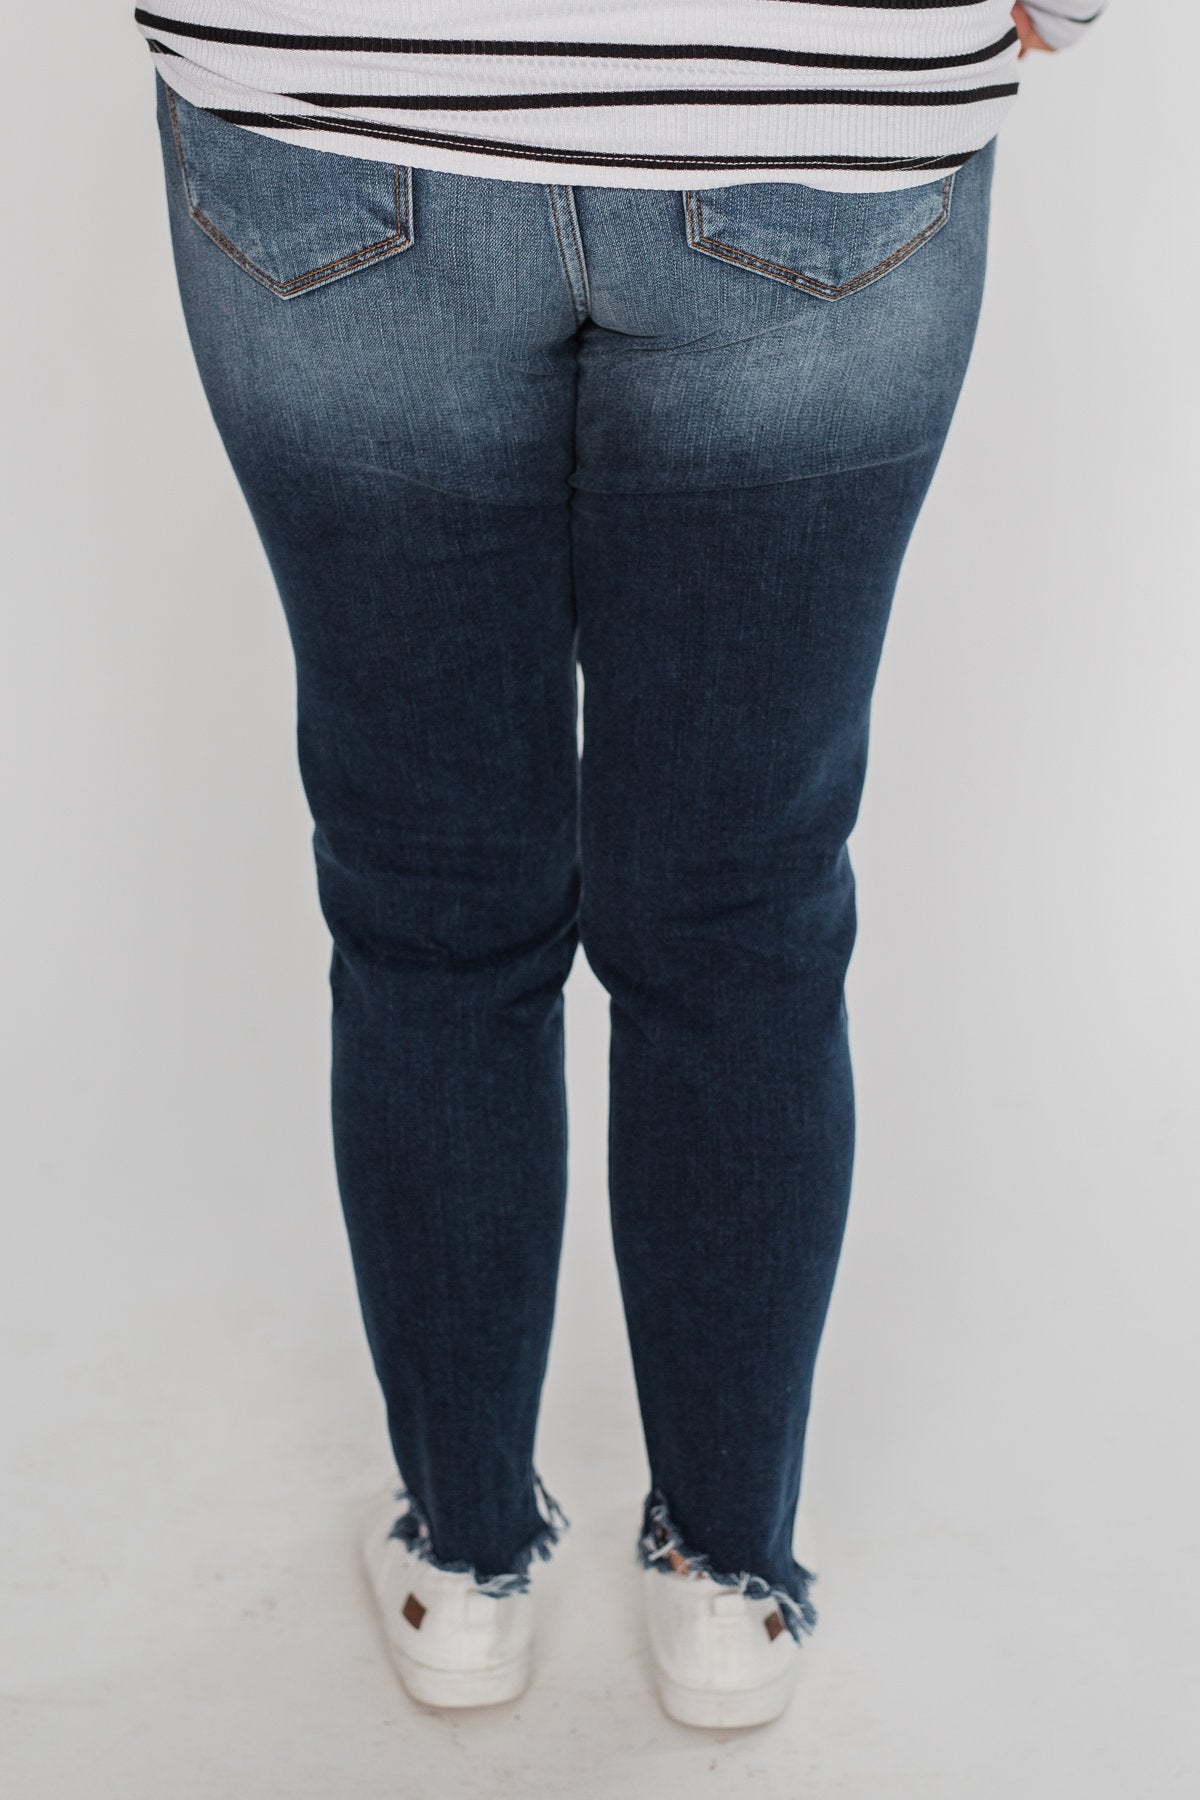 KanCan Jeans- Lesley Wash